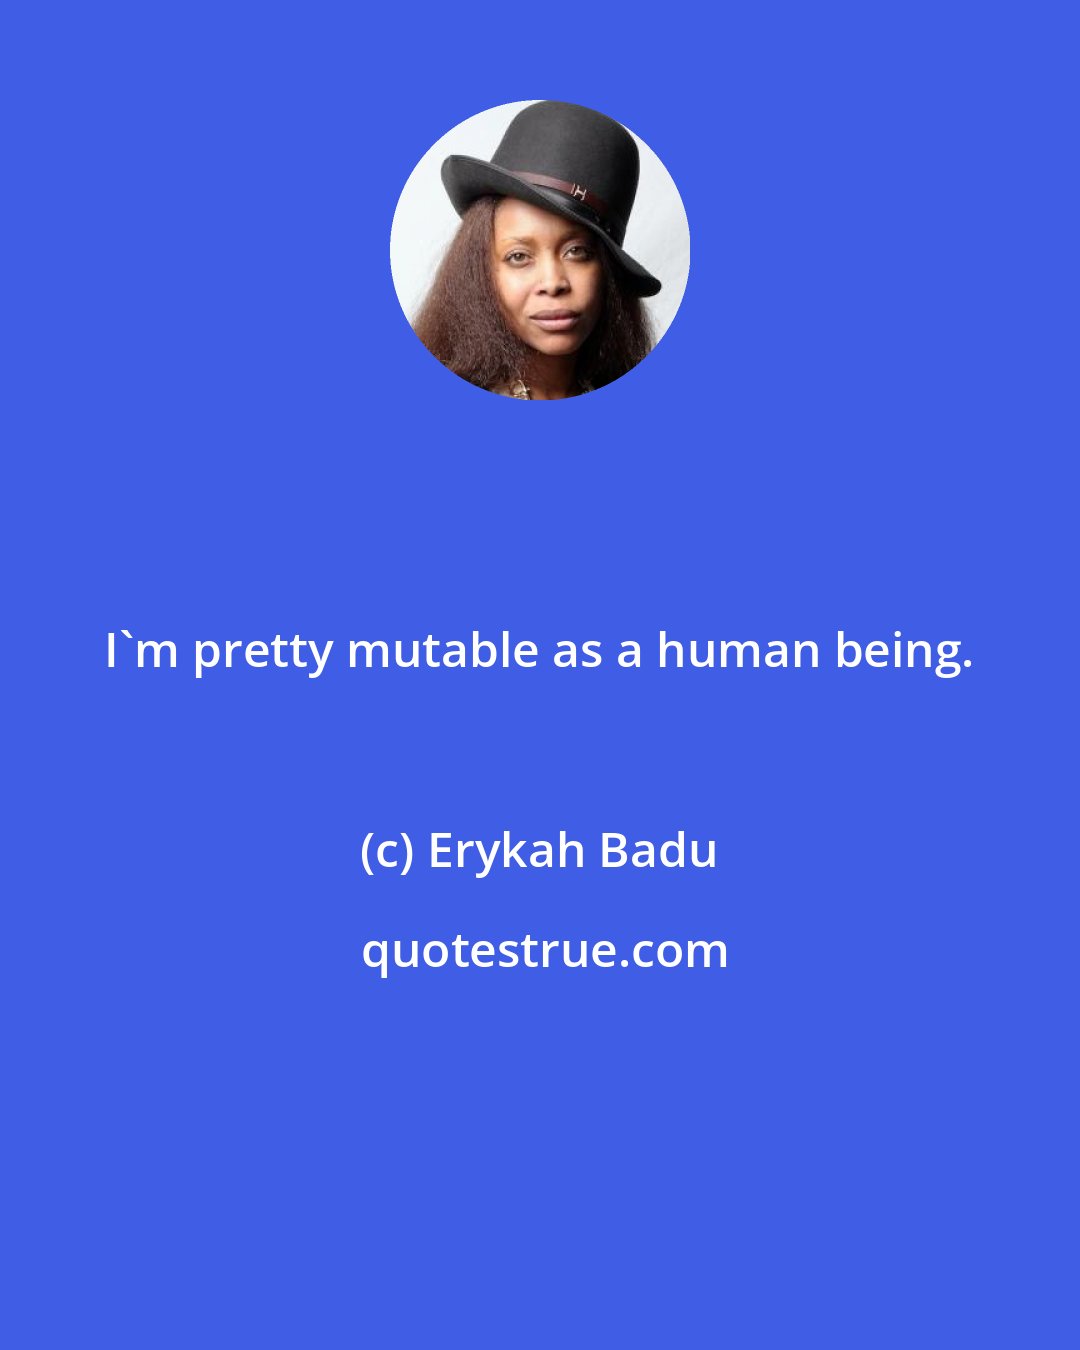 Erykah Badu: I'm pretty mutable as a human being.